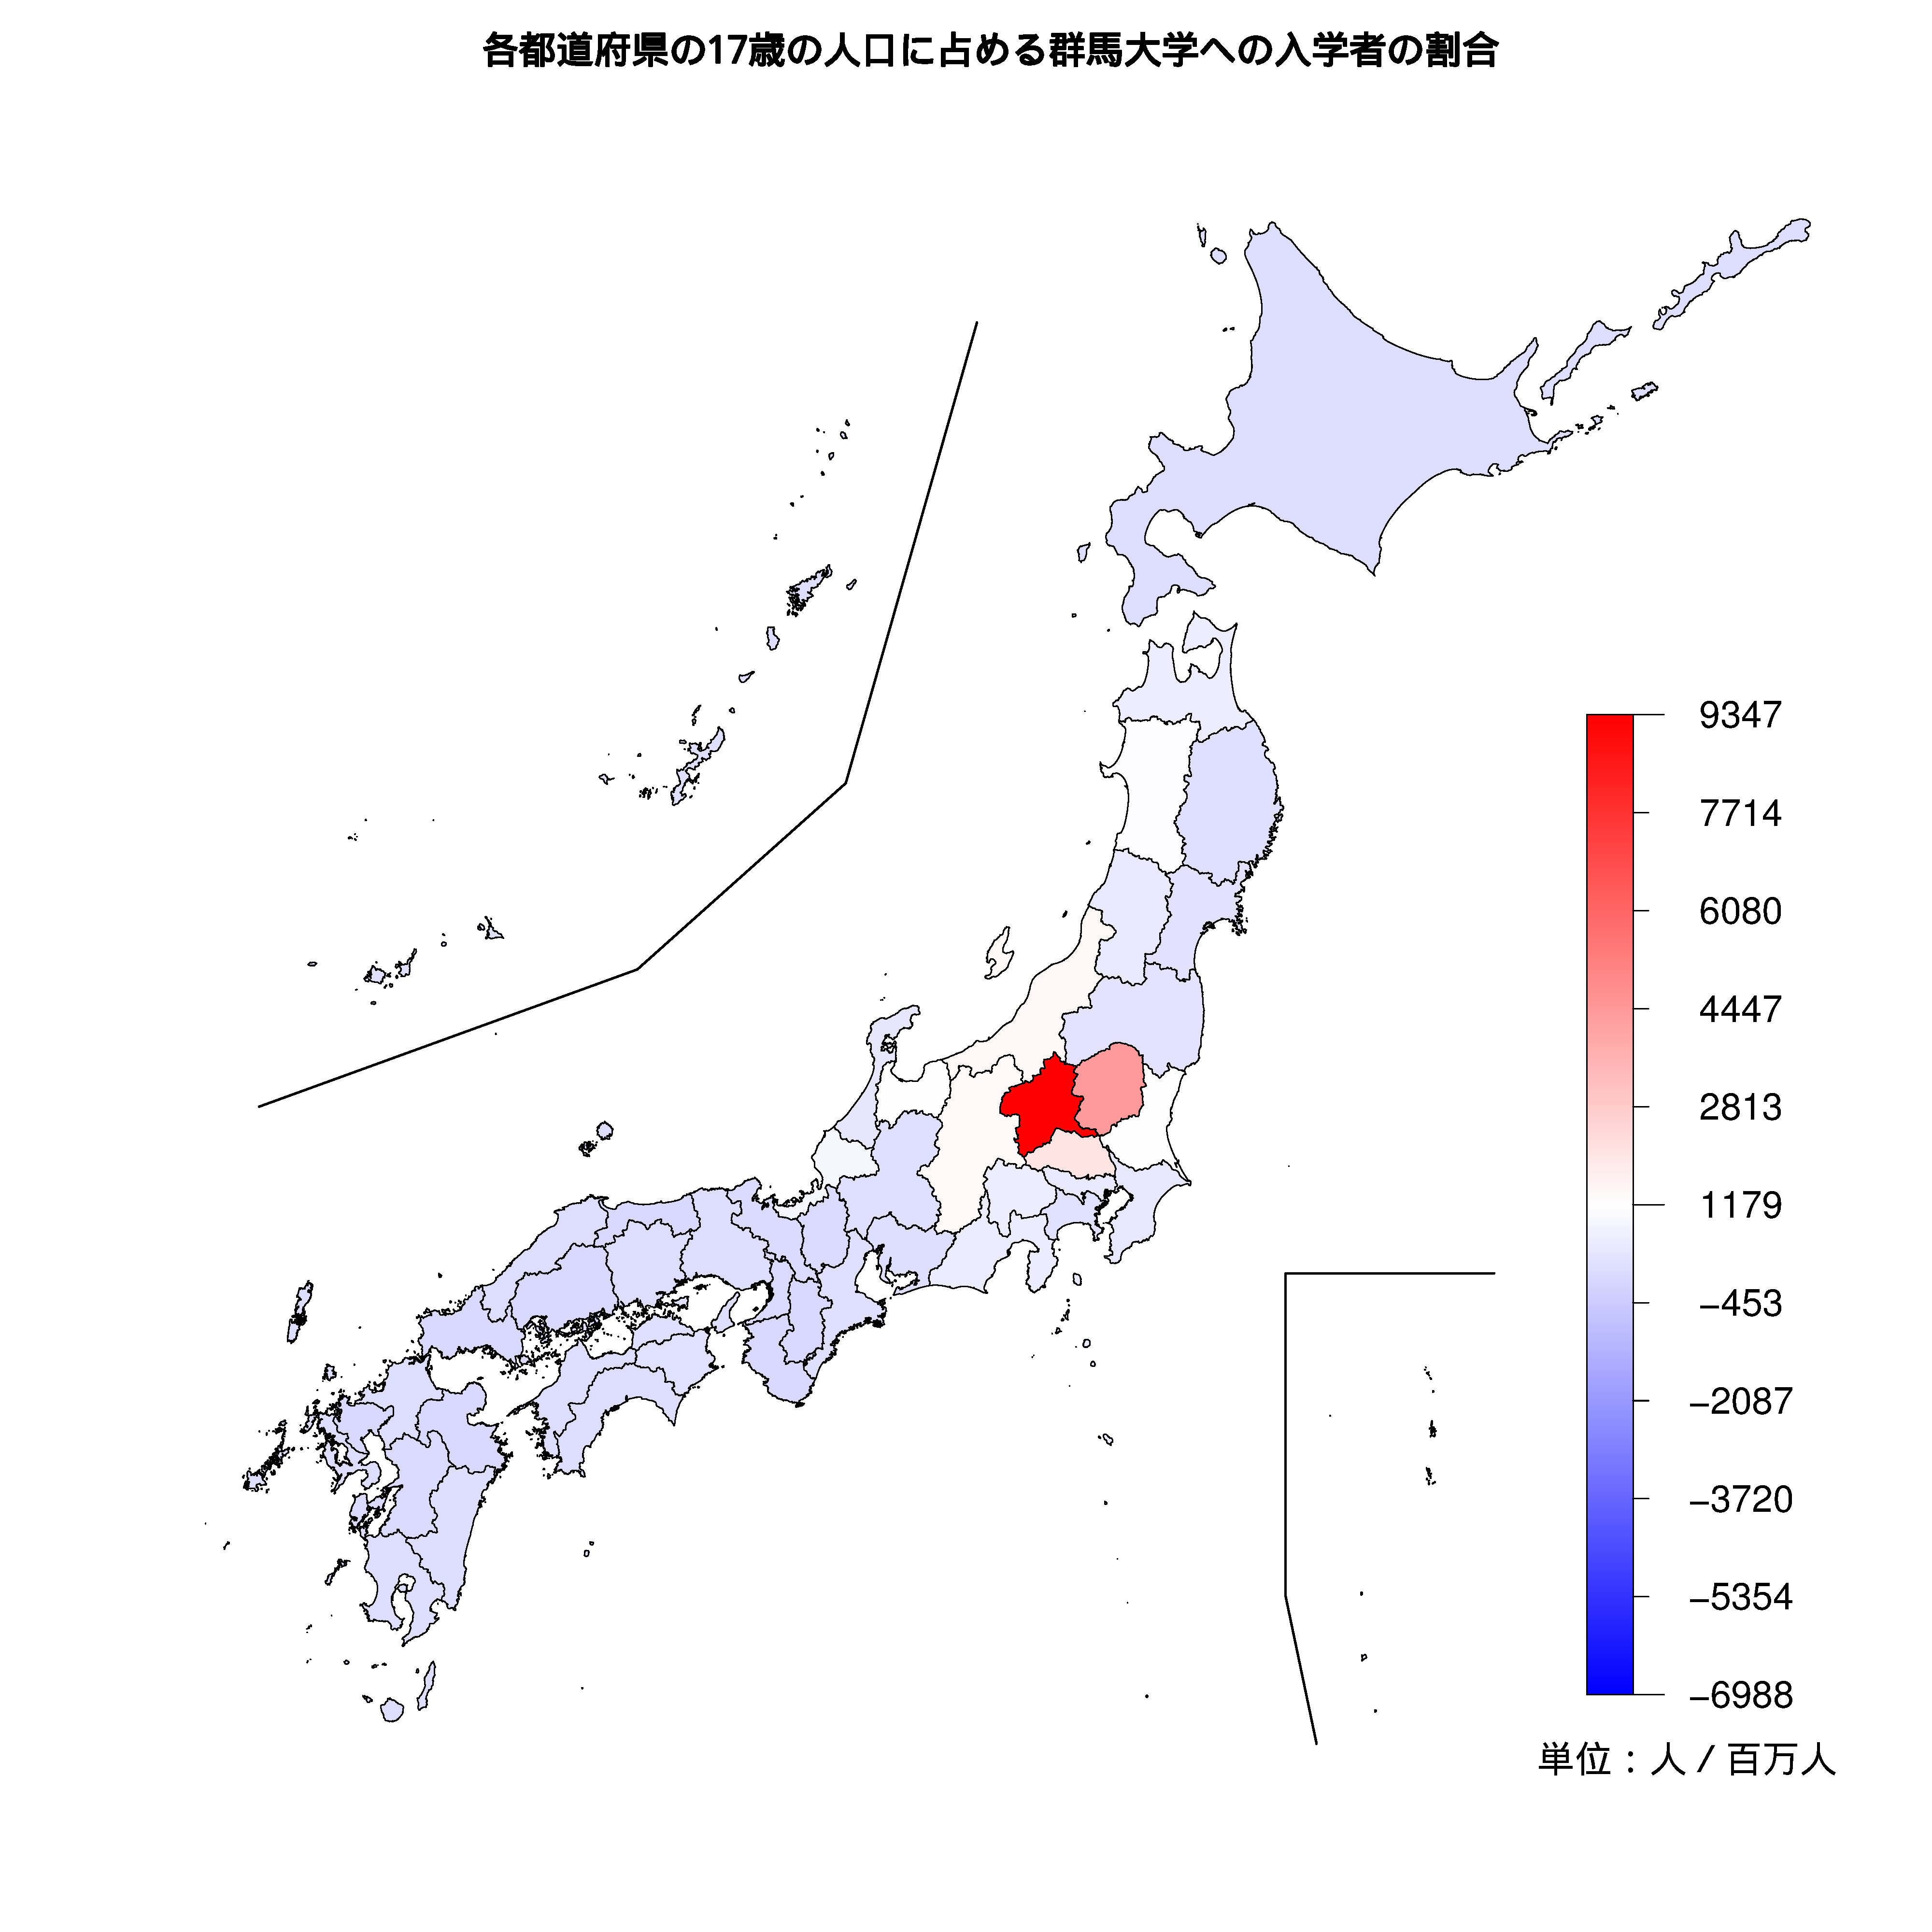 群馬大学への入学者が多い都道府県の色分け地図